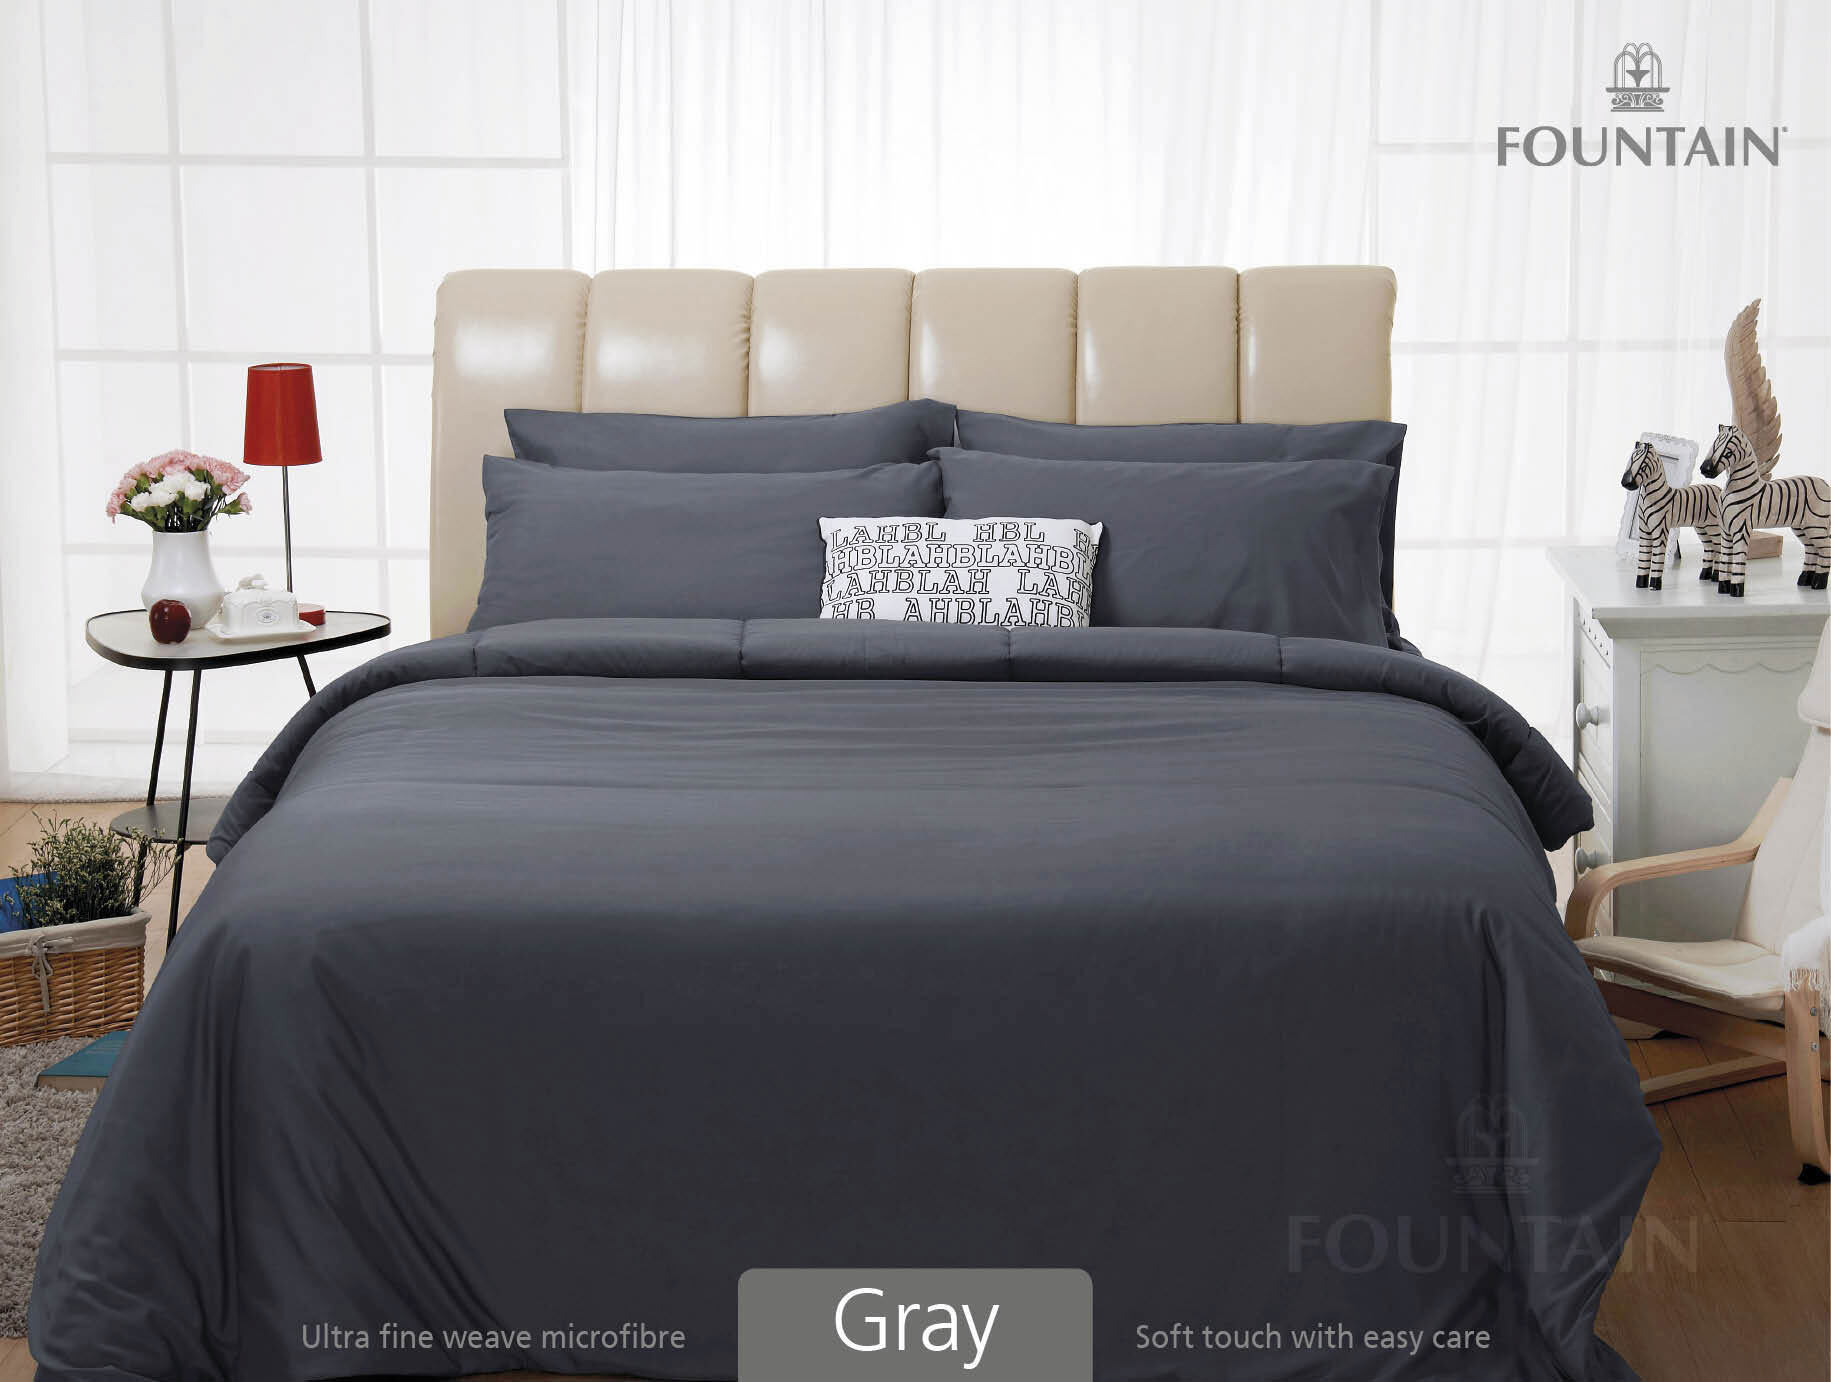 FOUNTAIN ผ้านวม + ชุดผ้าปู ผ้าปู ที่นอน แท้ 100% FTC สีพื้น เขียว Green Gray เทา ขนาด 3.5 5 6ฟุต ชุดเครื่องนอน ผ้านวม ผ้าปูที่นอน wonderful bedding  สี → Grayขนาดสินค้า 6 ฟุต